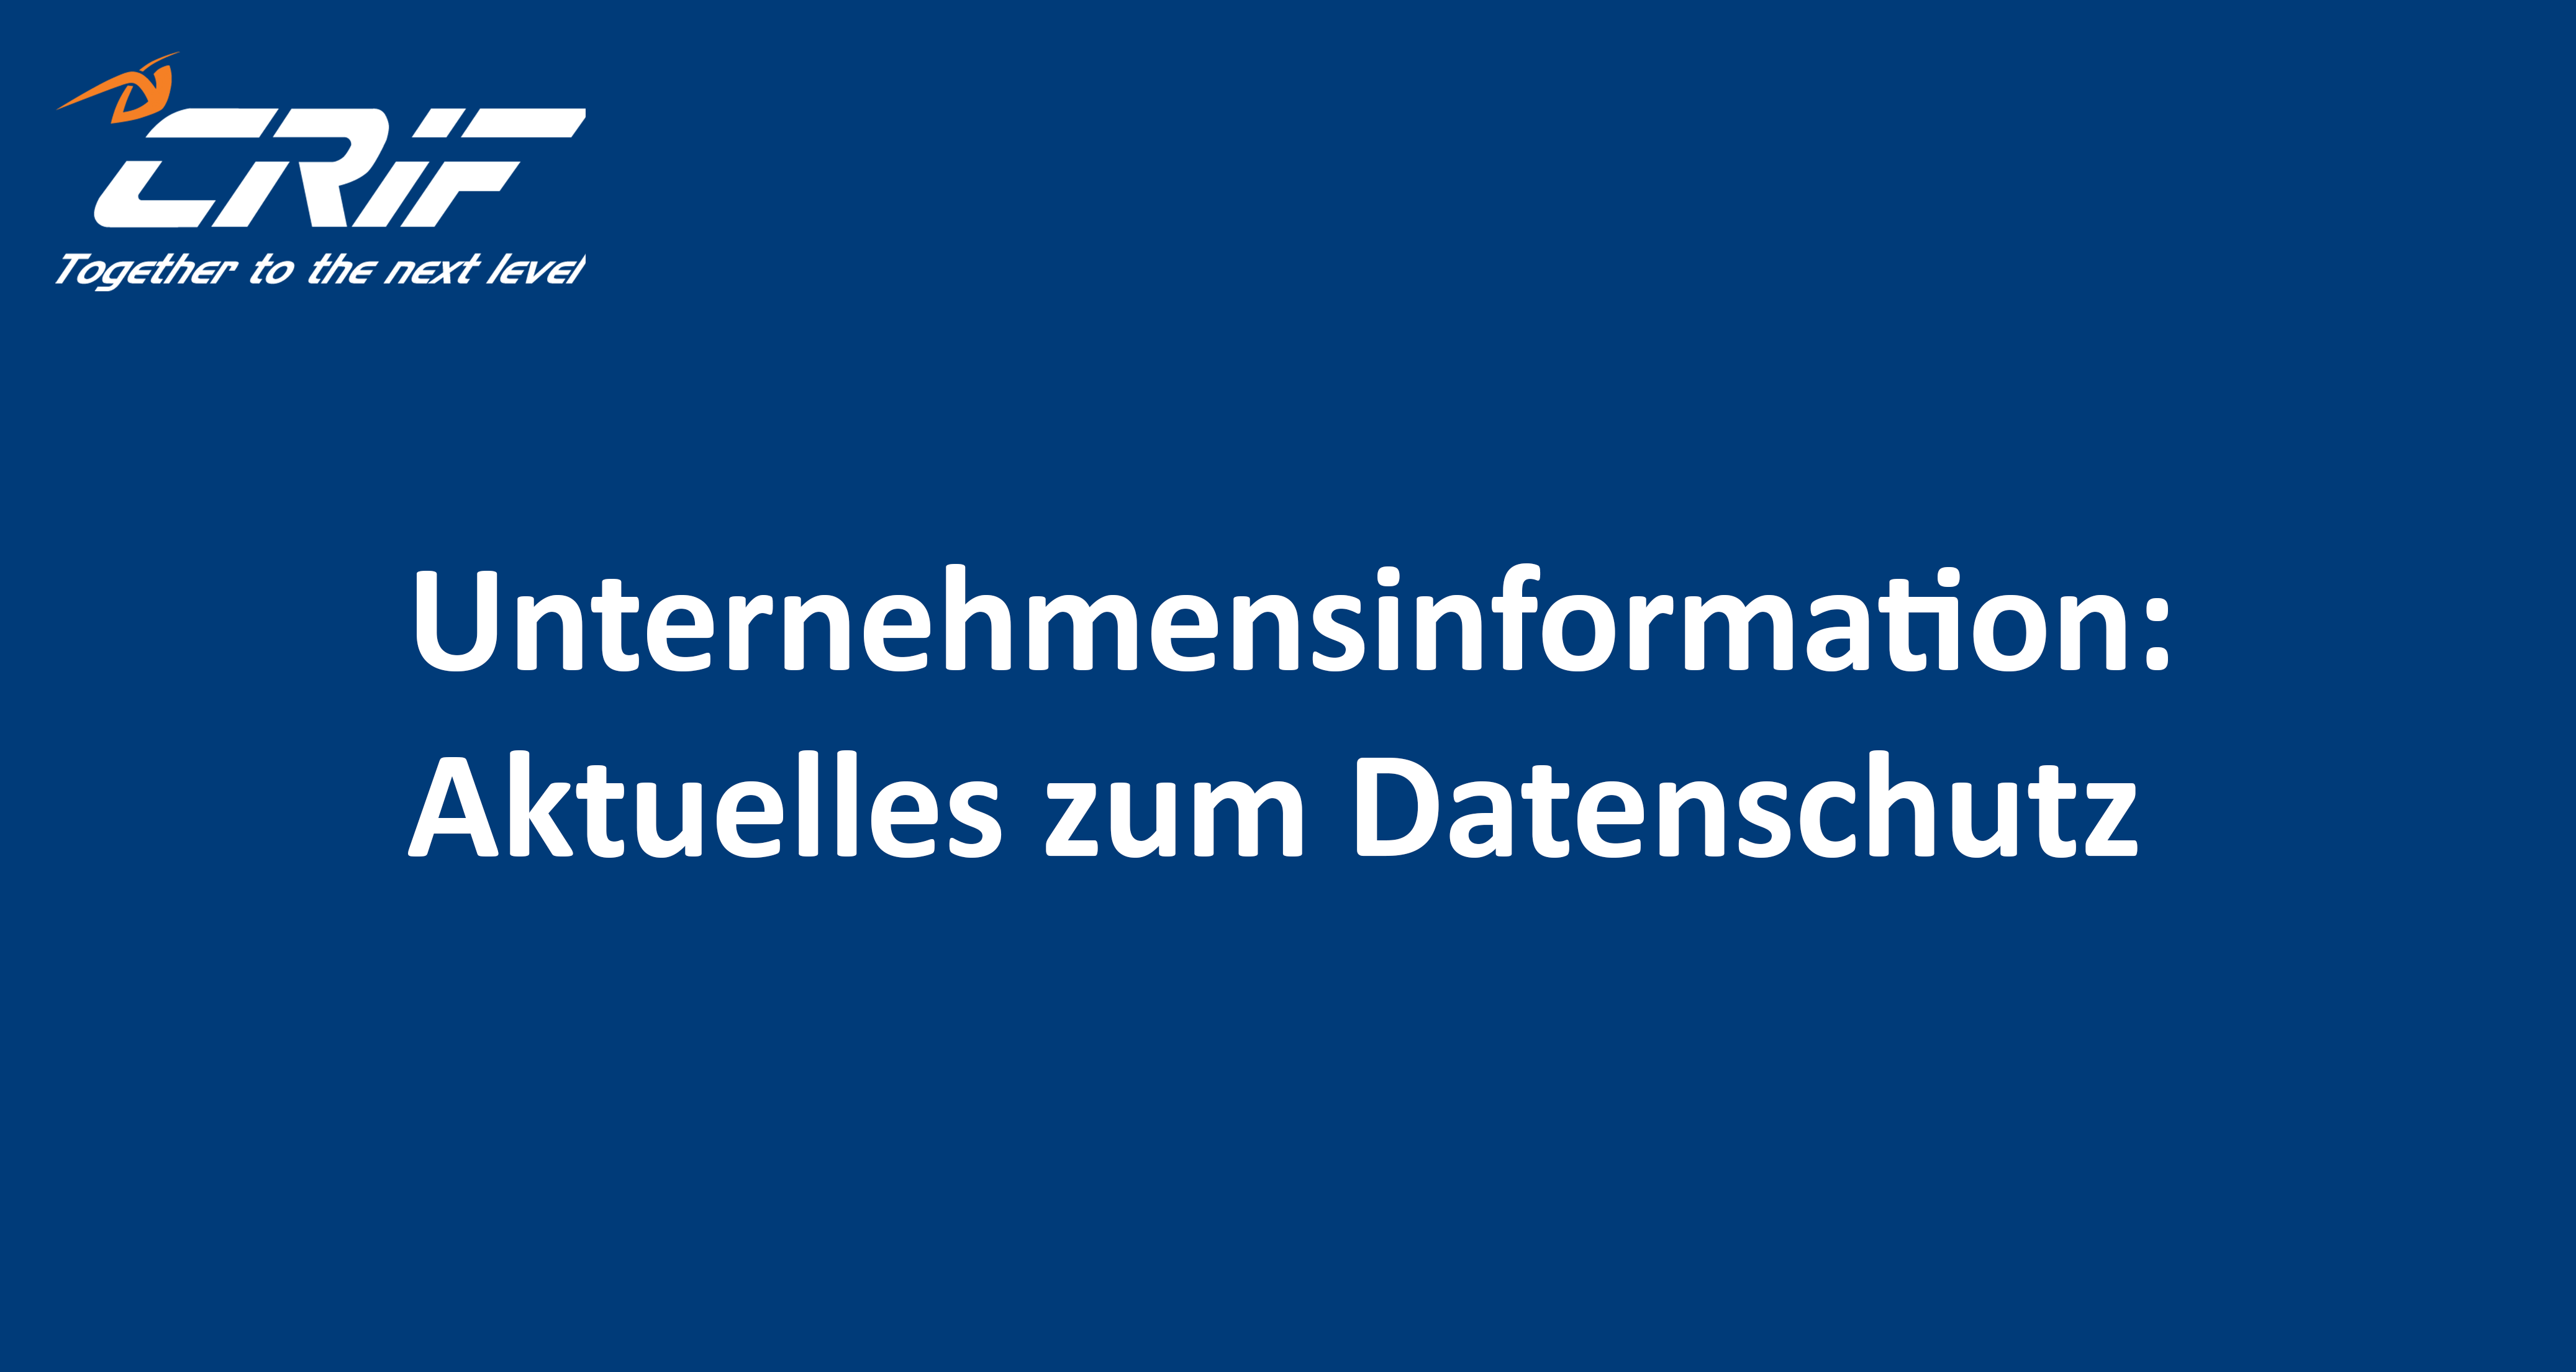 Unternehmensinformation_Aktuelles_zum_Datenschutz.png